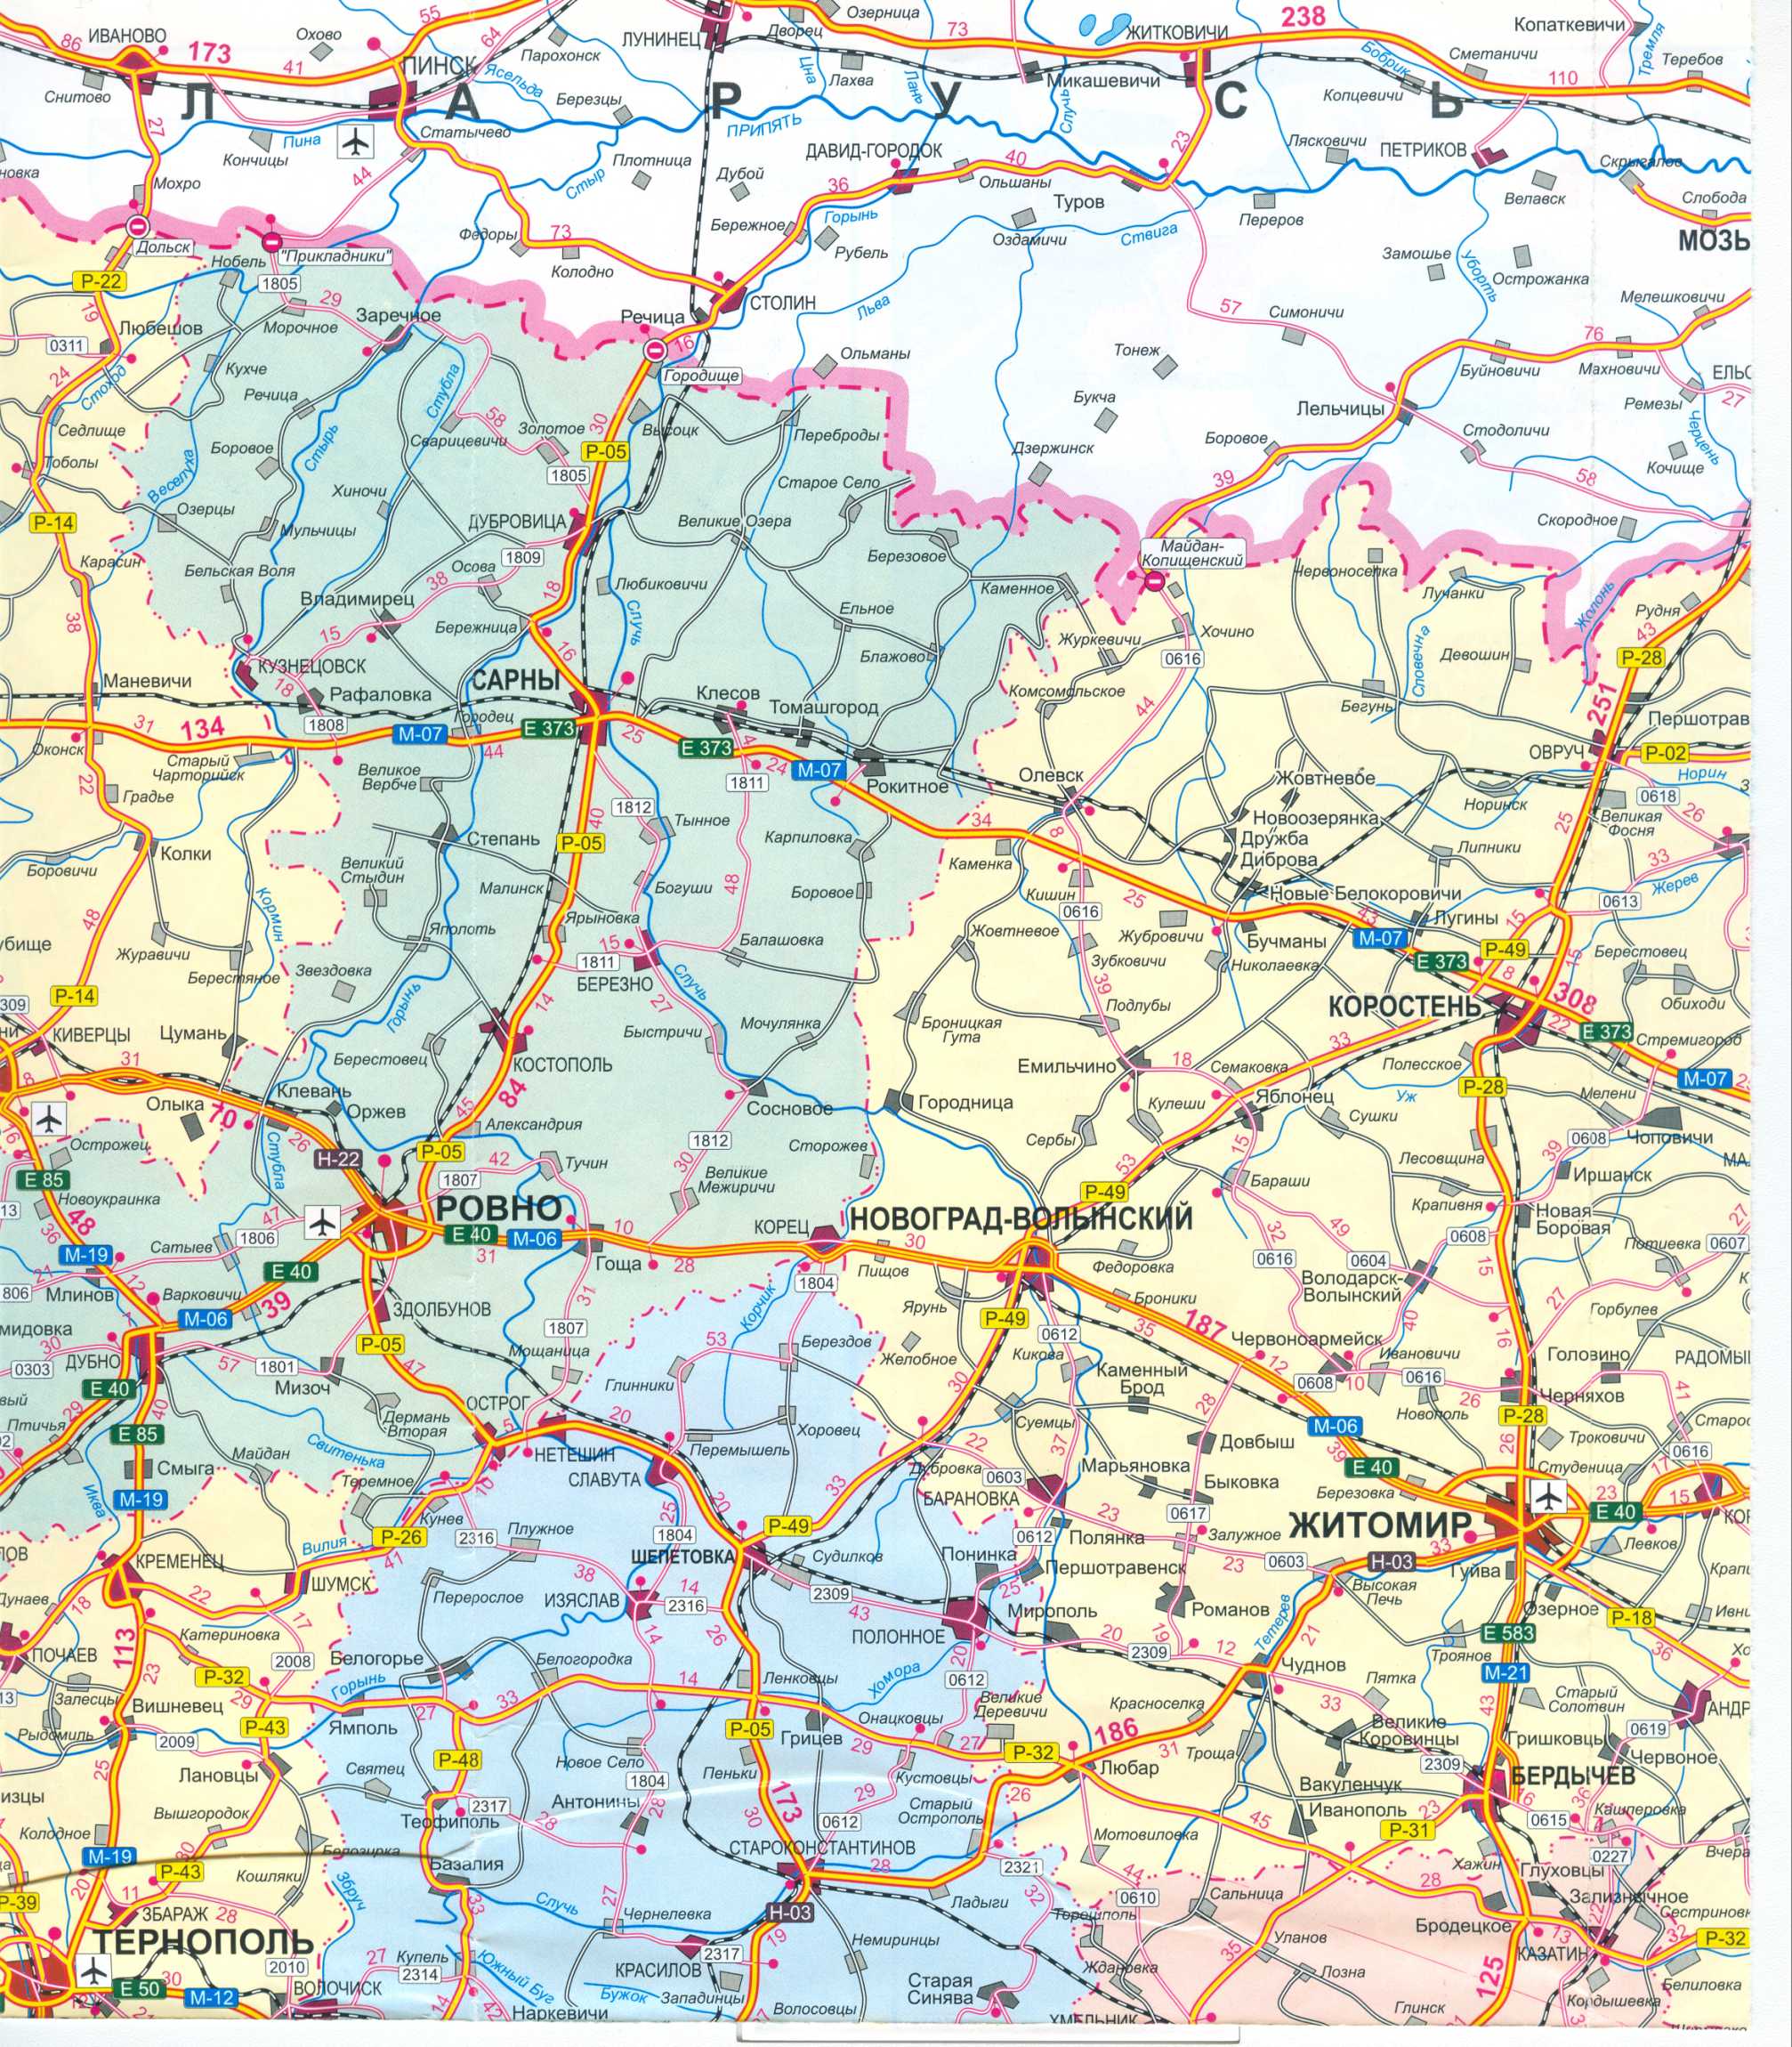 Карта Украины бесплатно. Карта дорог Украины скачать бесплатно. Большая карта дорог Украины бесплатно, B0